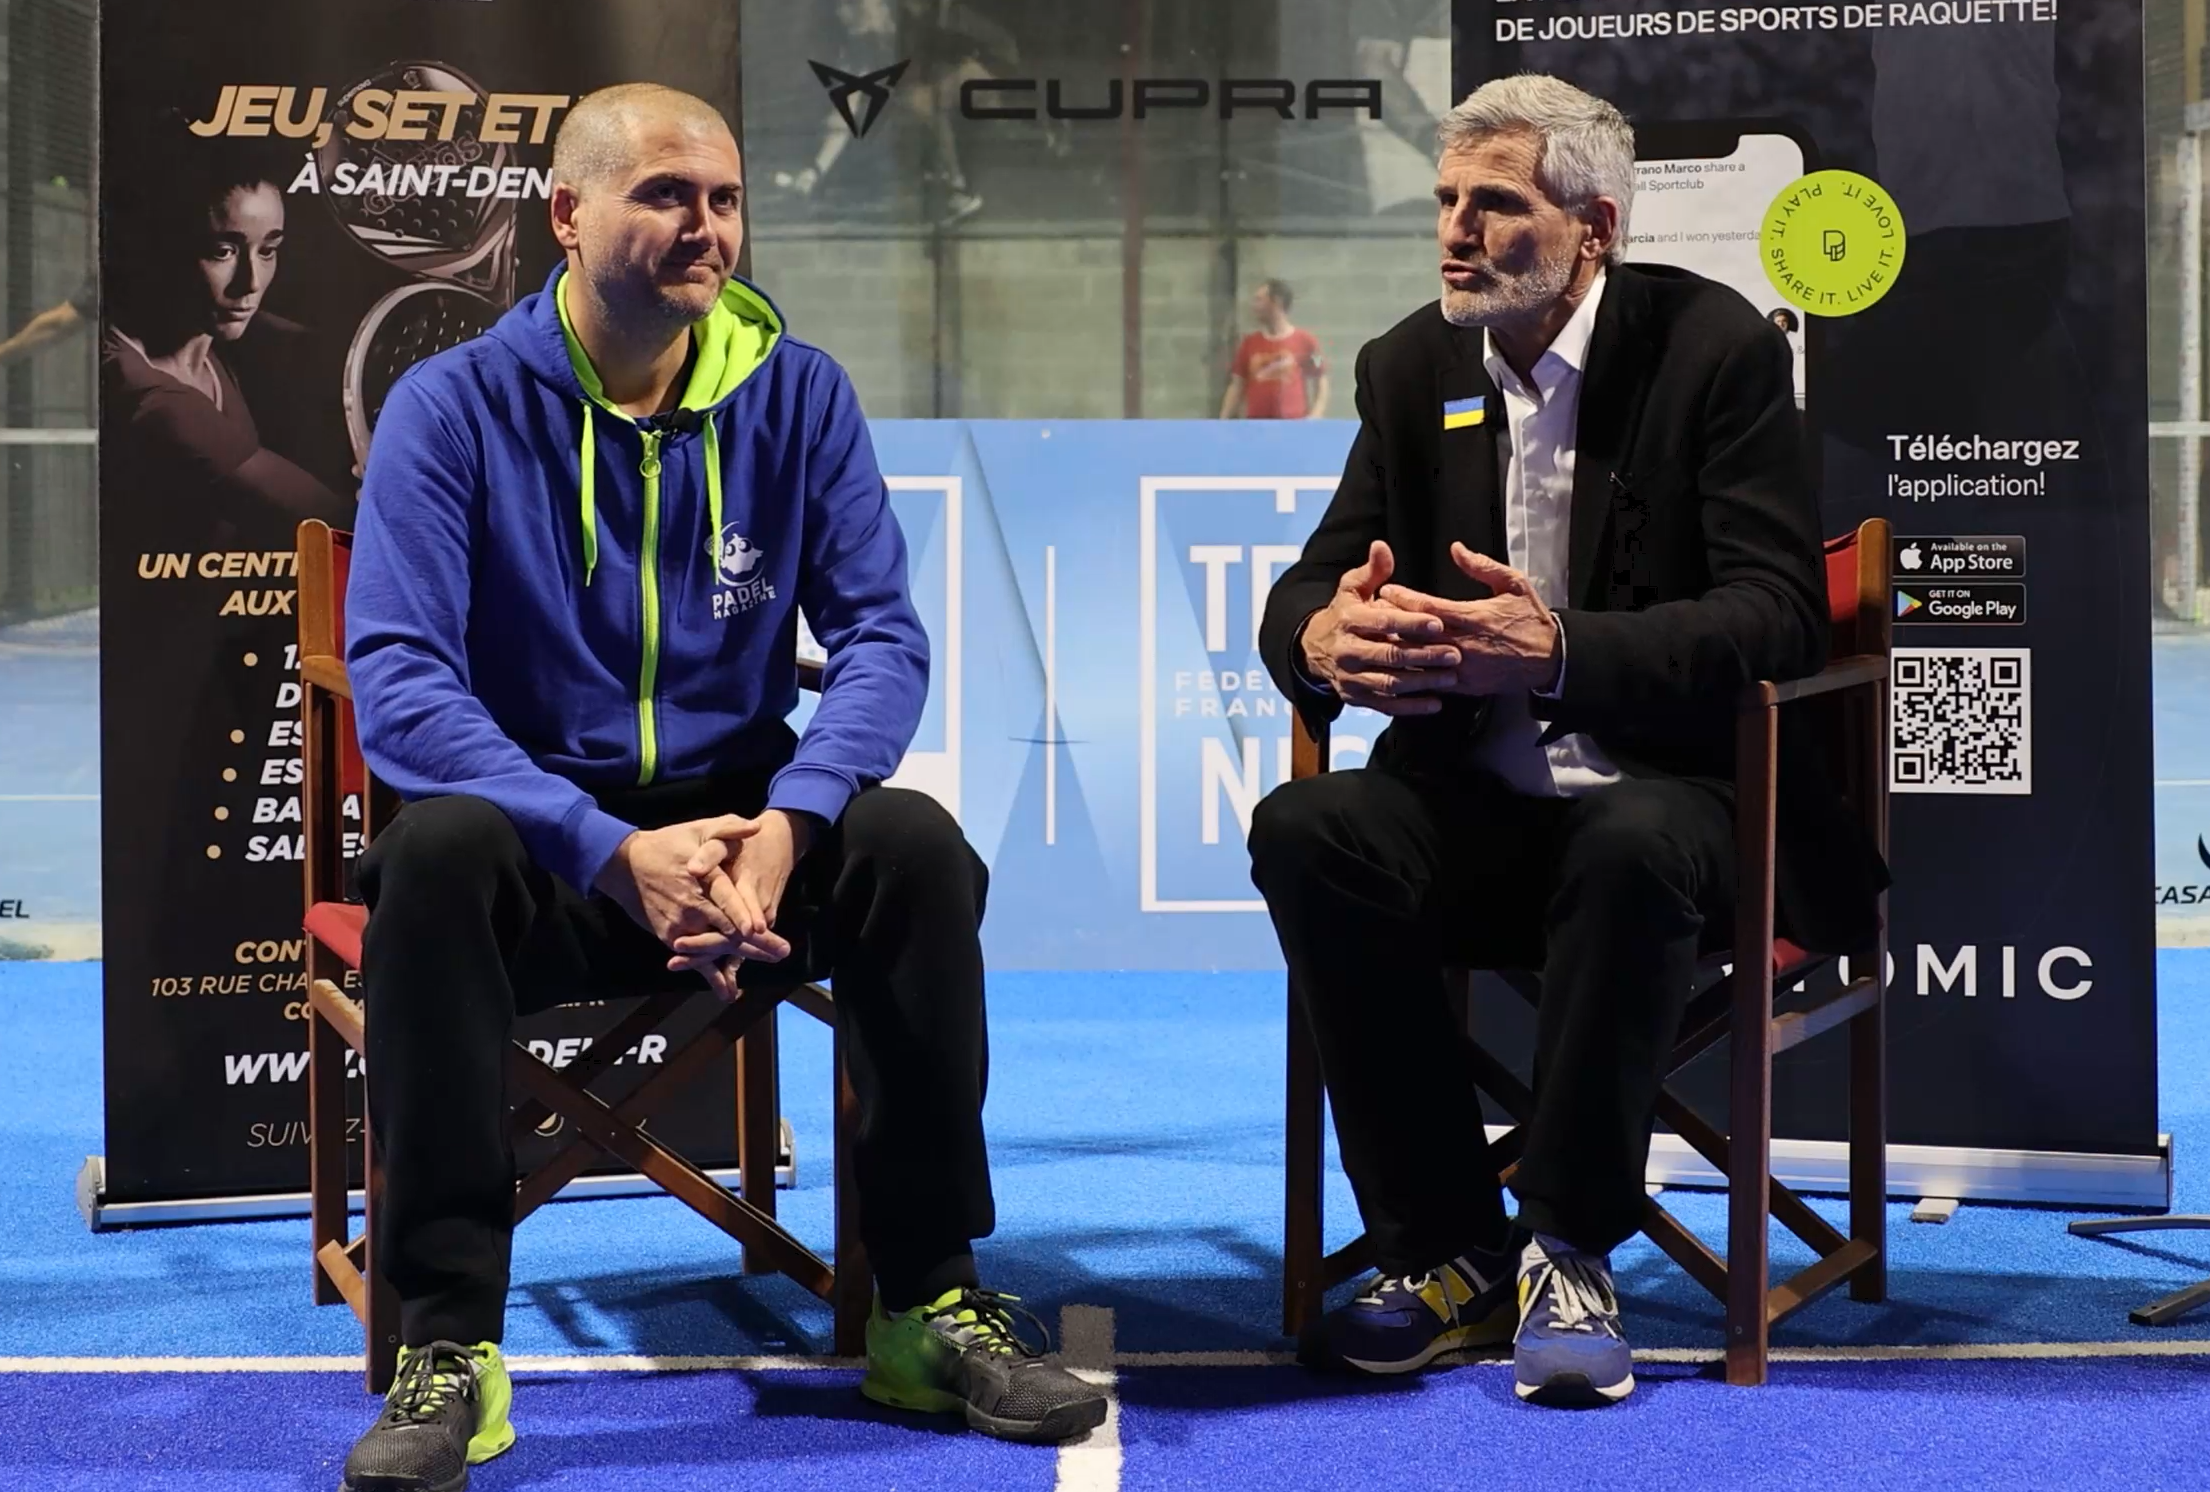 Gilles Moretton – Roland-Garros, professionalització i desenvolupament de padel